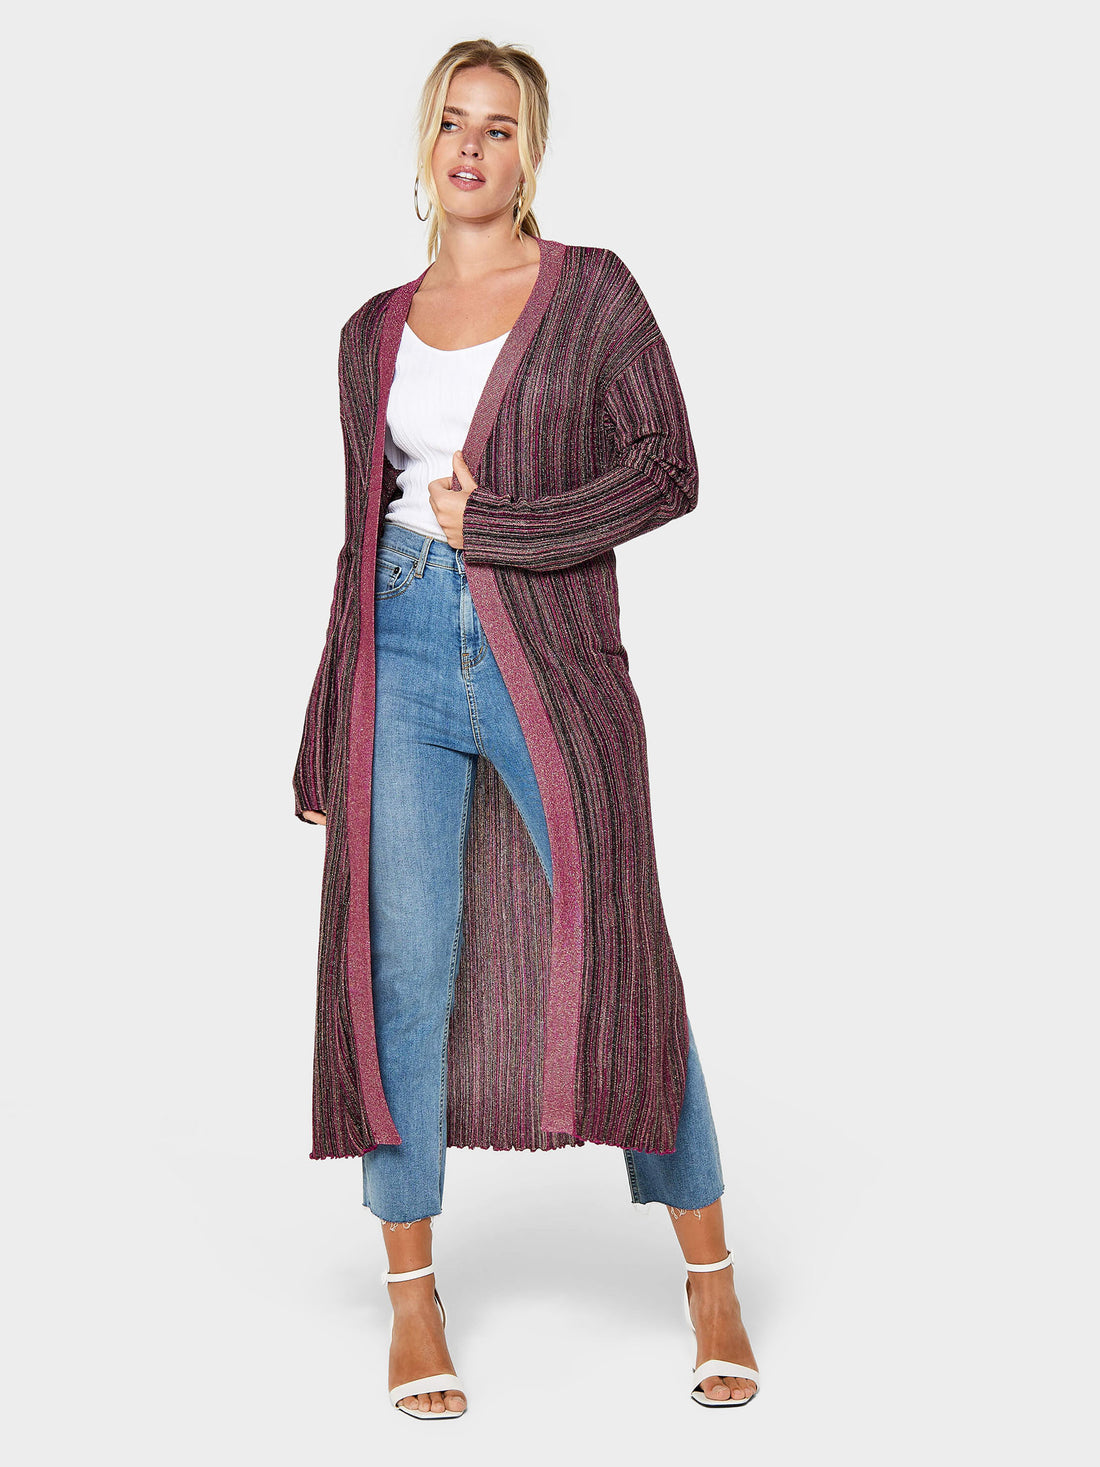 Jessica Knitted Cardigan | GWD Fashion